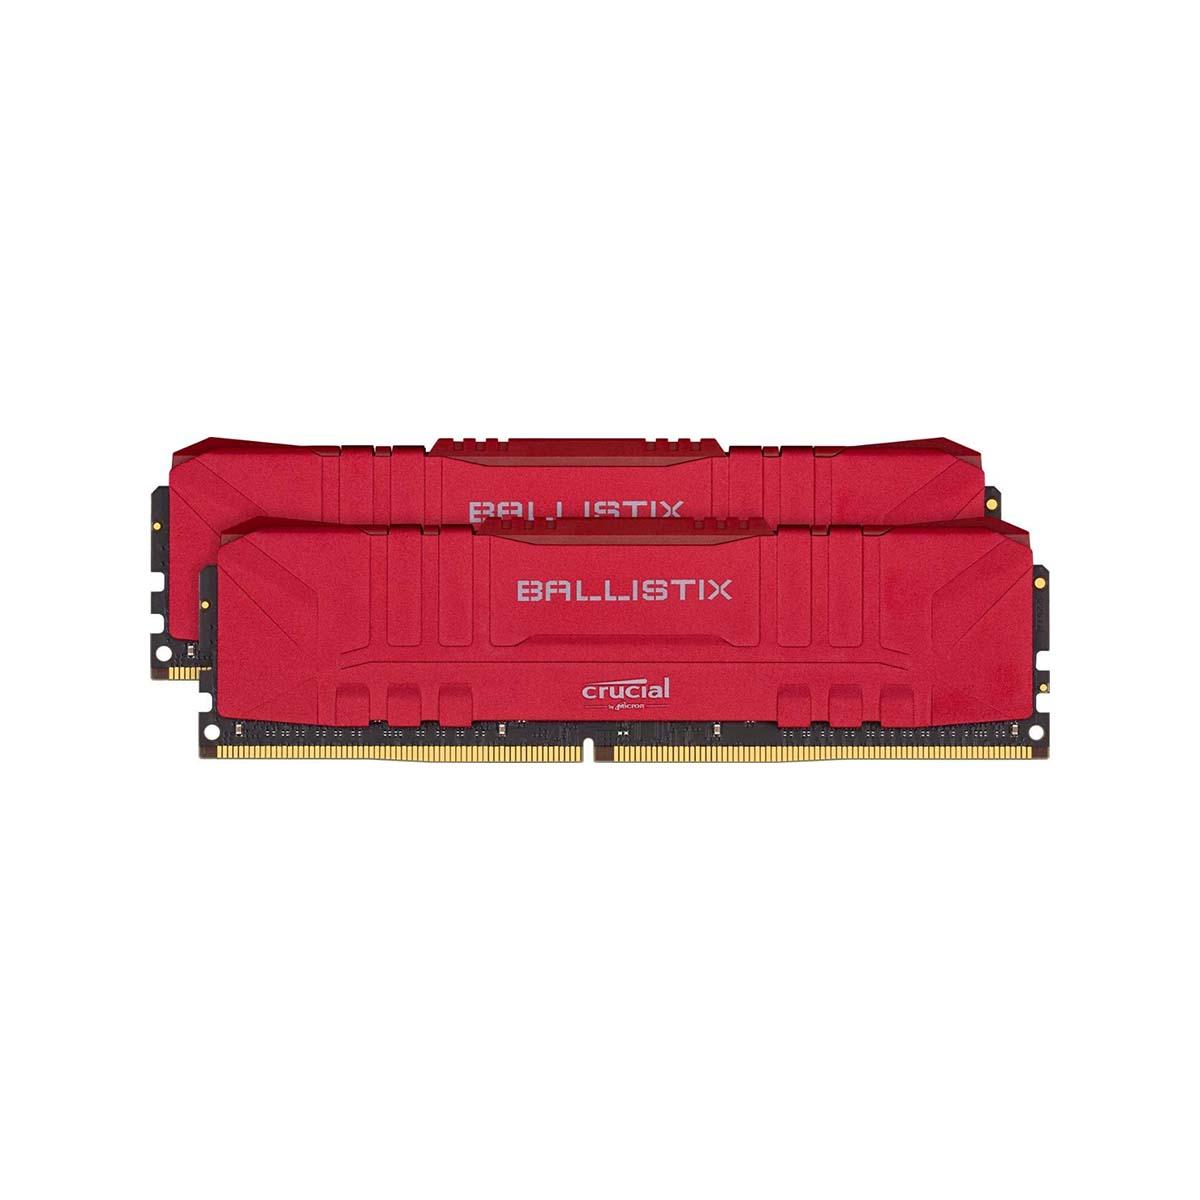 MEMORIA DIMM DDR4 CRUCIAL BALLISTIX (BL2K8G26C16U4R) 16GB KIT (2X8GB) 2666MHZ, RED HEATSINK, CL16 - BL2K8G26C16U4R